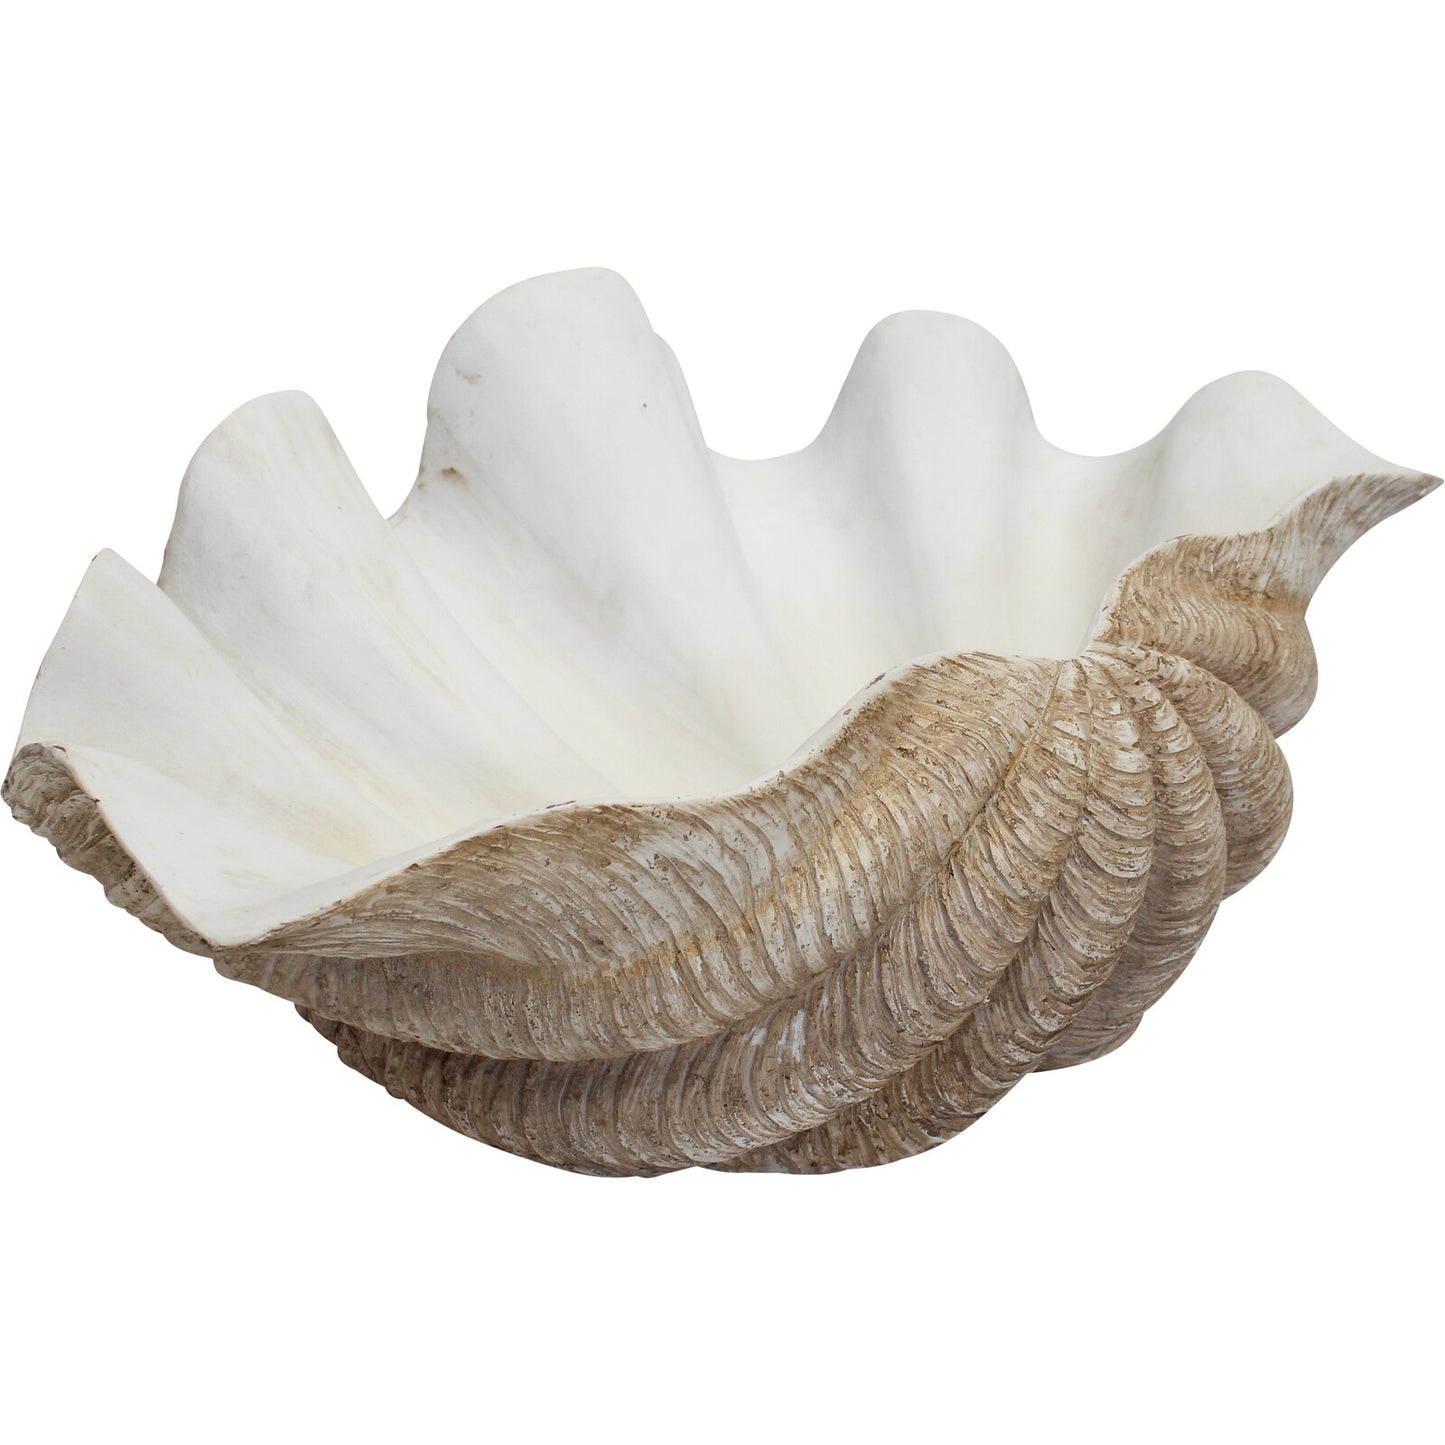 Coastal decor clam shell bowl / tray giant XL